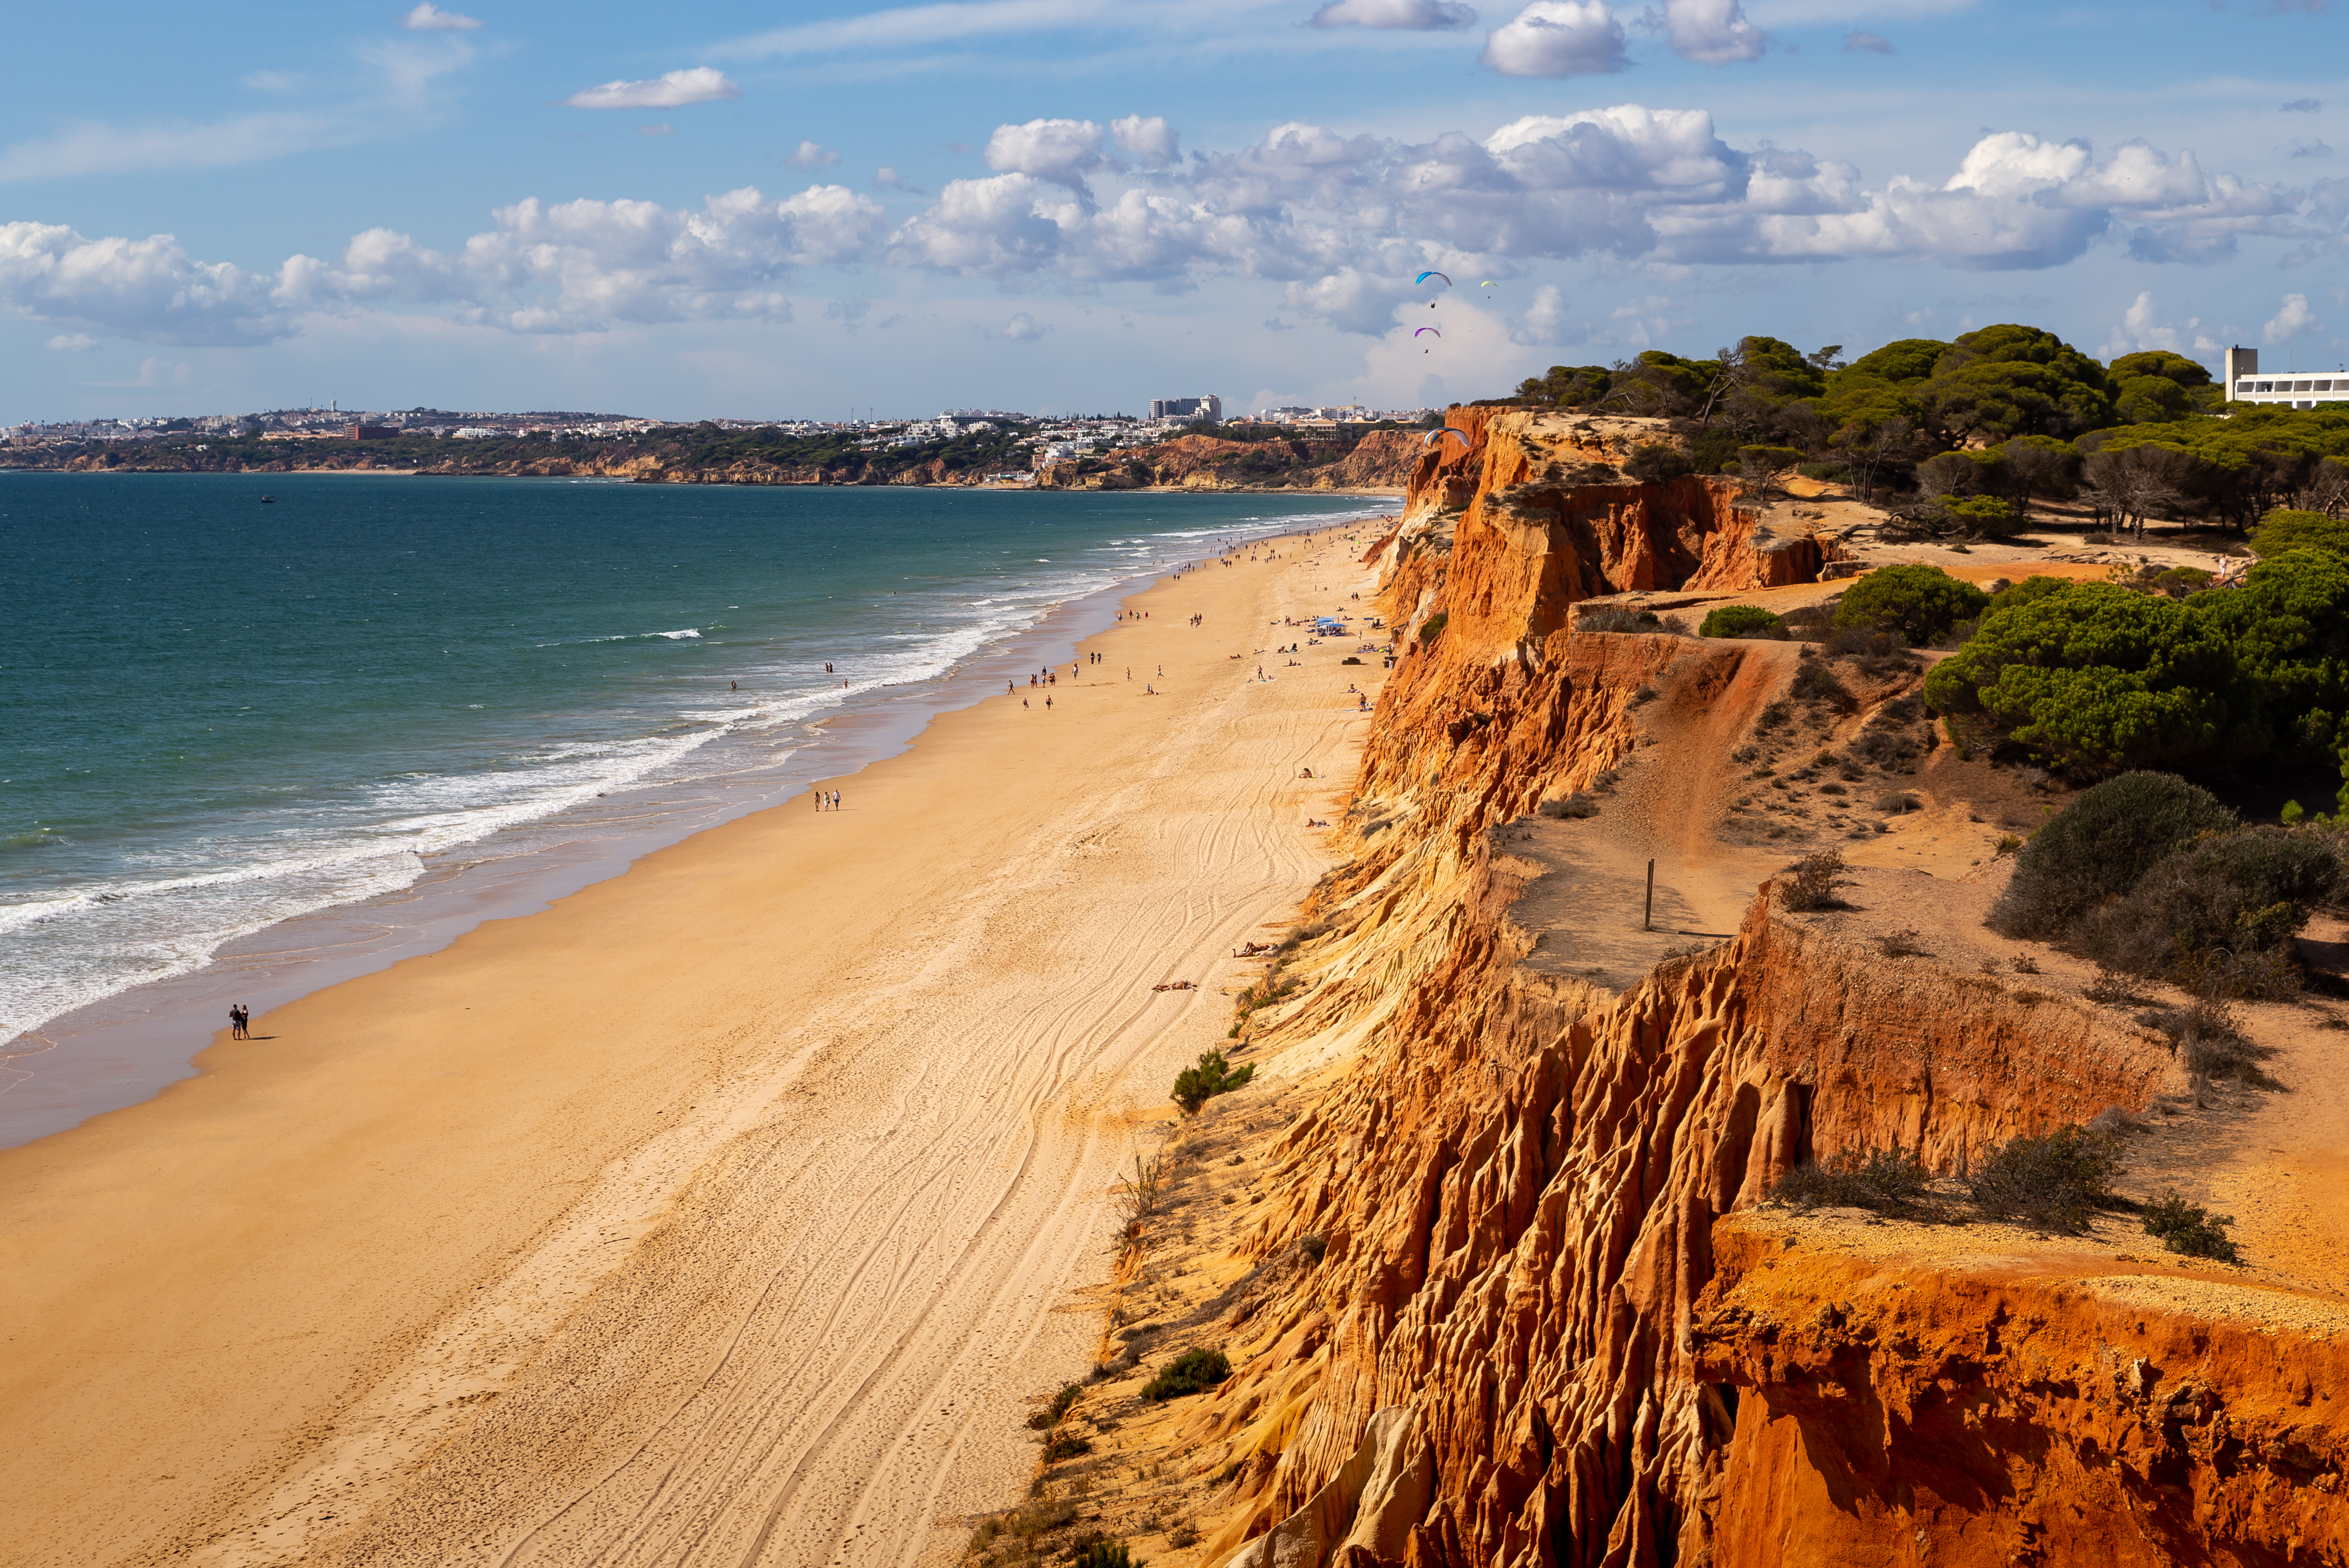 Praia da Falésia in Portugal was named the best beach in the world